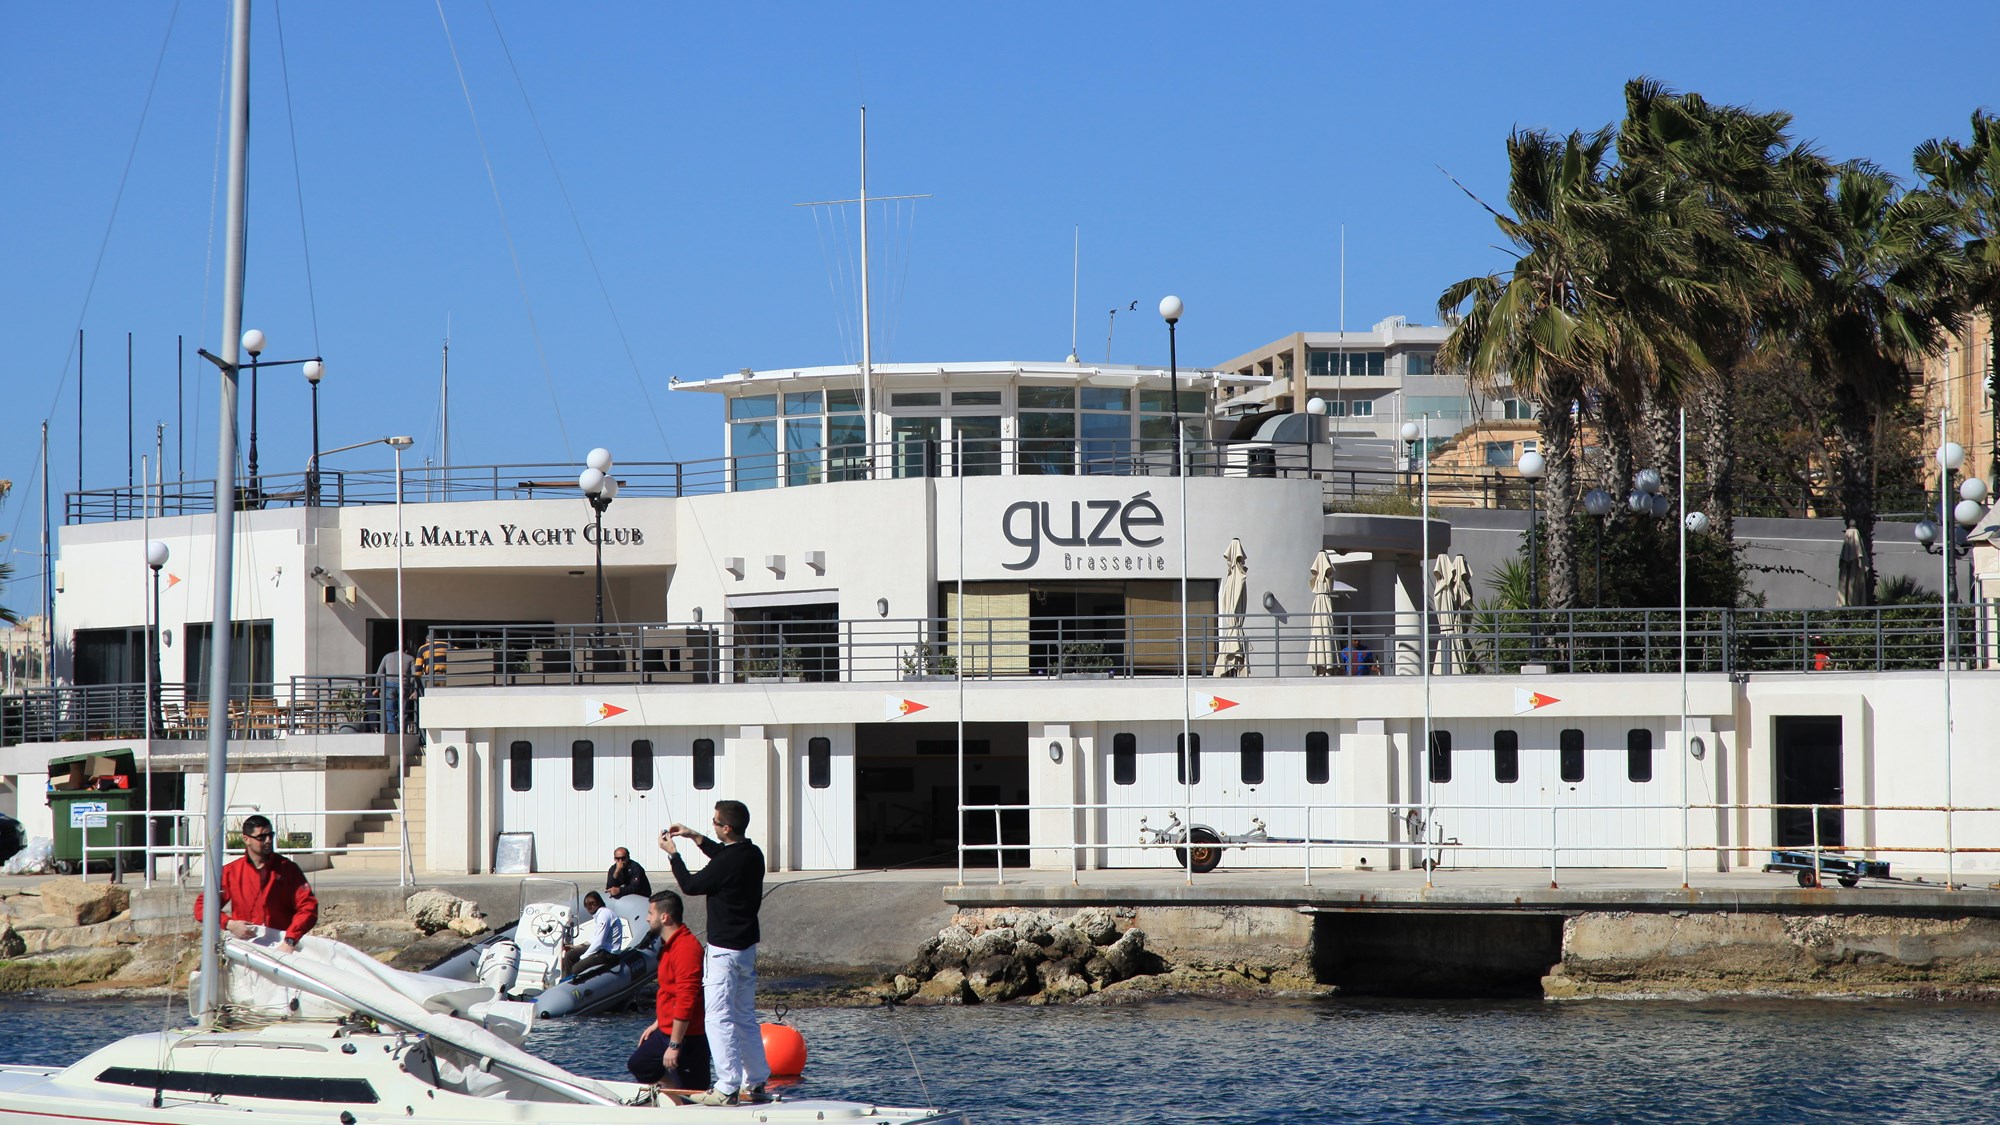 royal malta yacht club photos